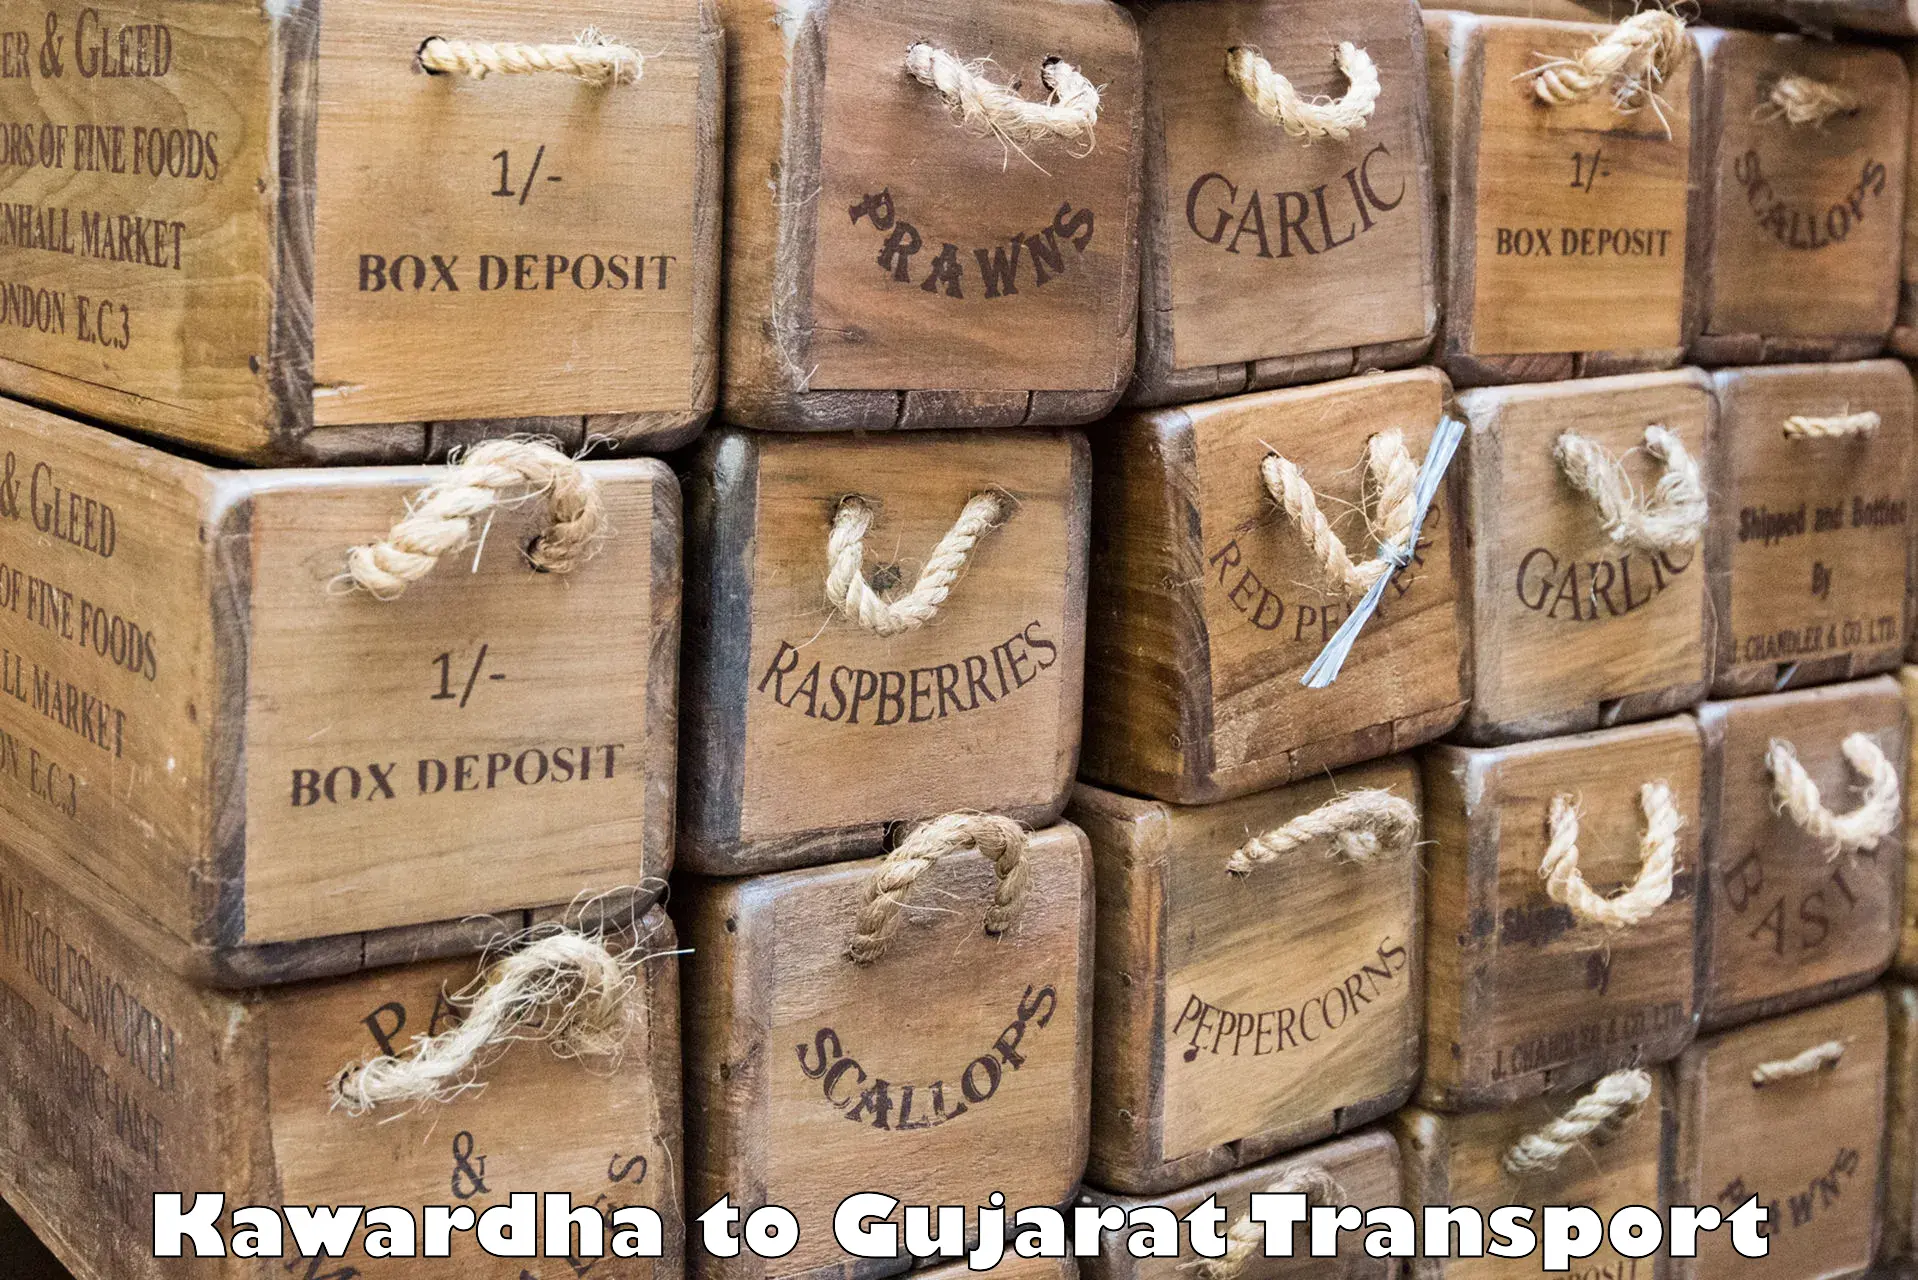 Nationwide transport services Kawardha to Banaskantha